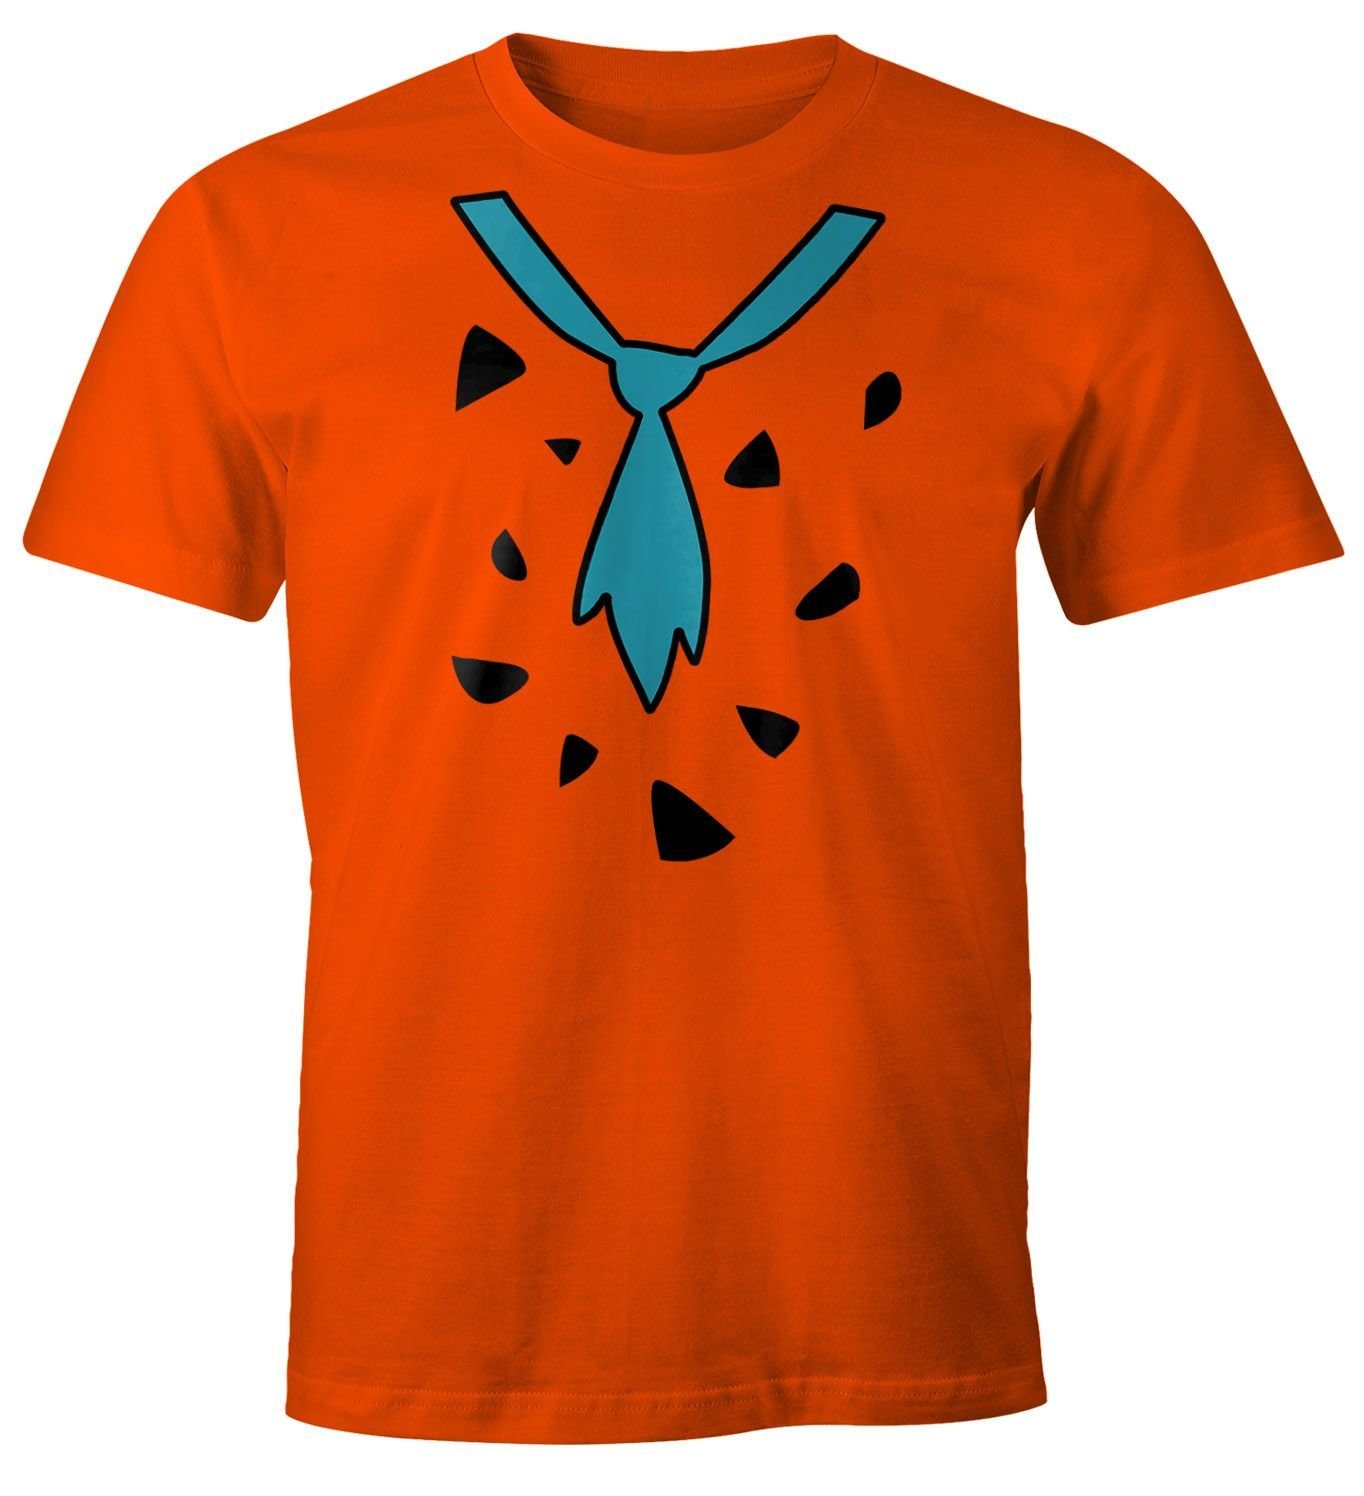 Moonworks® T-Shirt Faschings-Shirt Herren mit Fasching Feuerstein Fred MoonWorks Print Karneval Print-Shirt